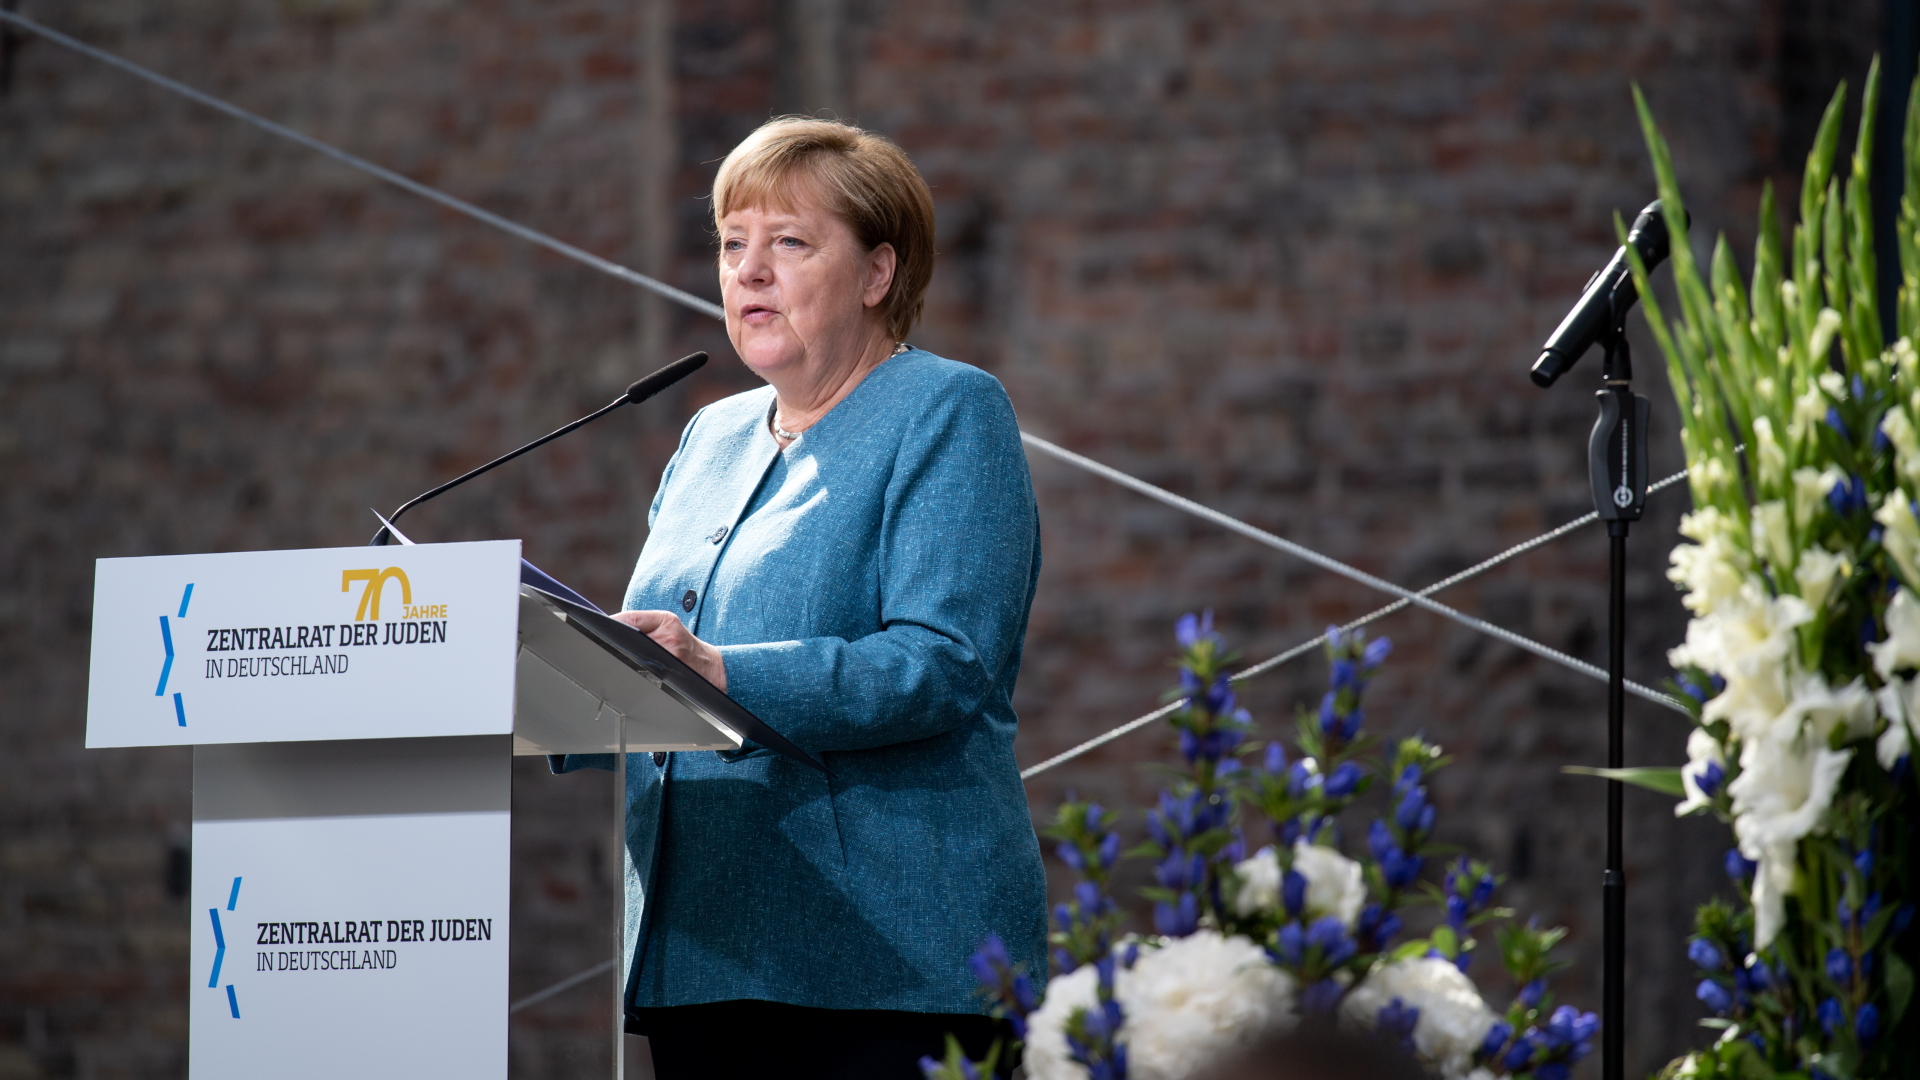 Berlin: Angela Merkel spricht beim Festakt zum 70-jährigen Bestehen des Zentralrats der Juden. | dpa